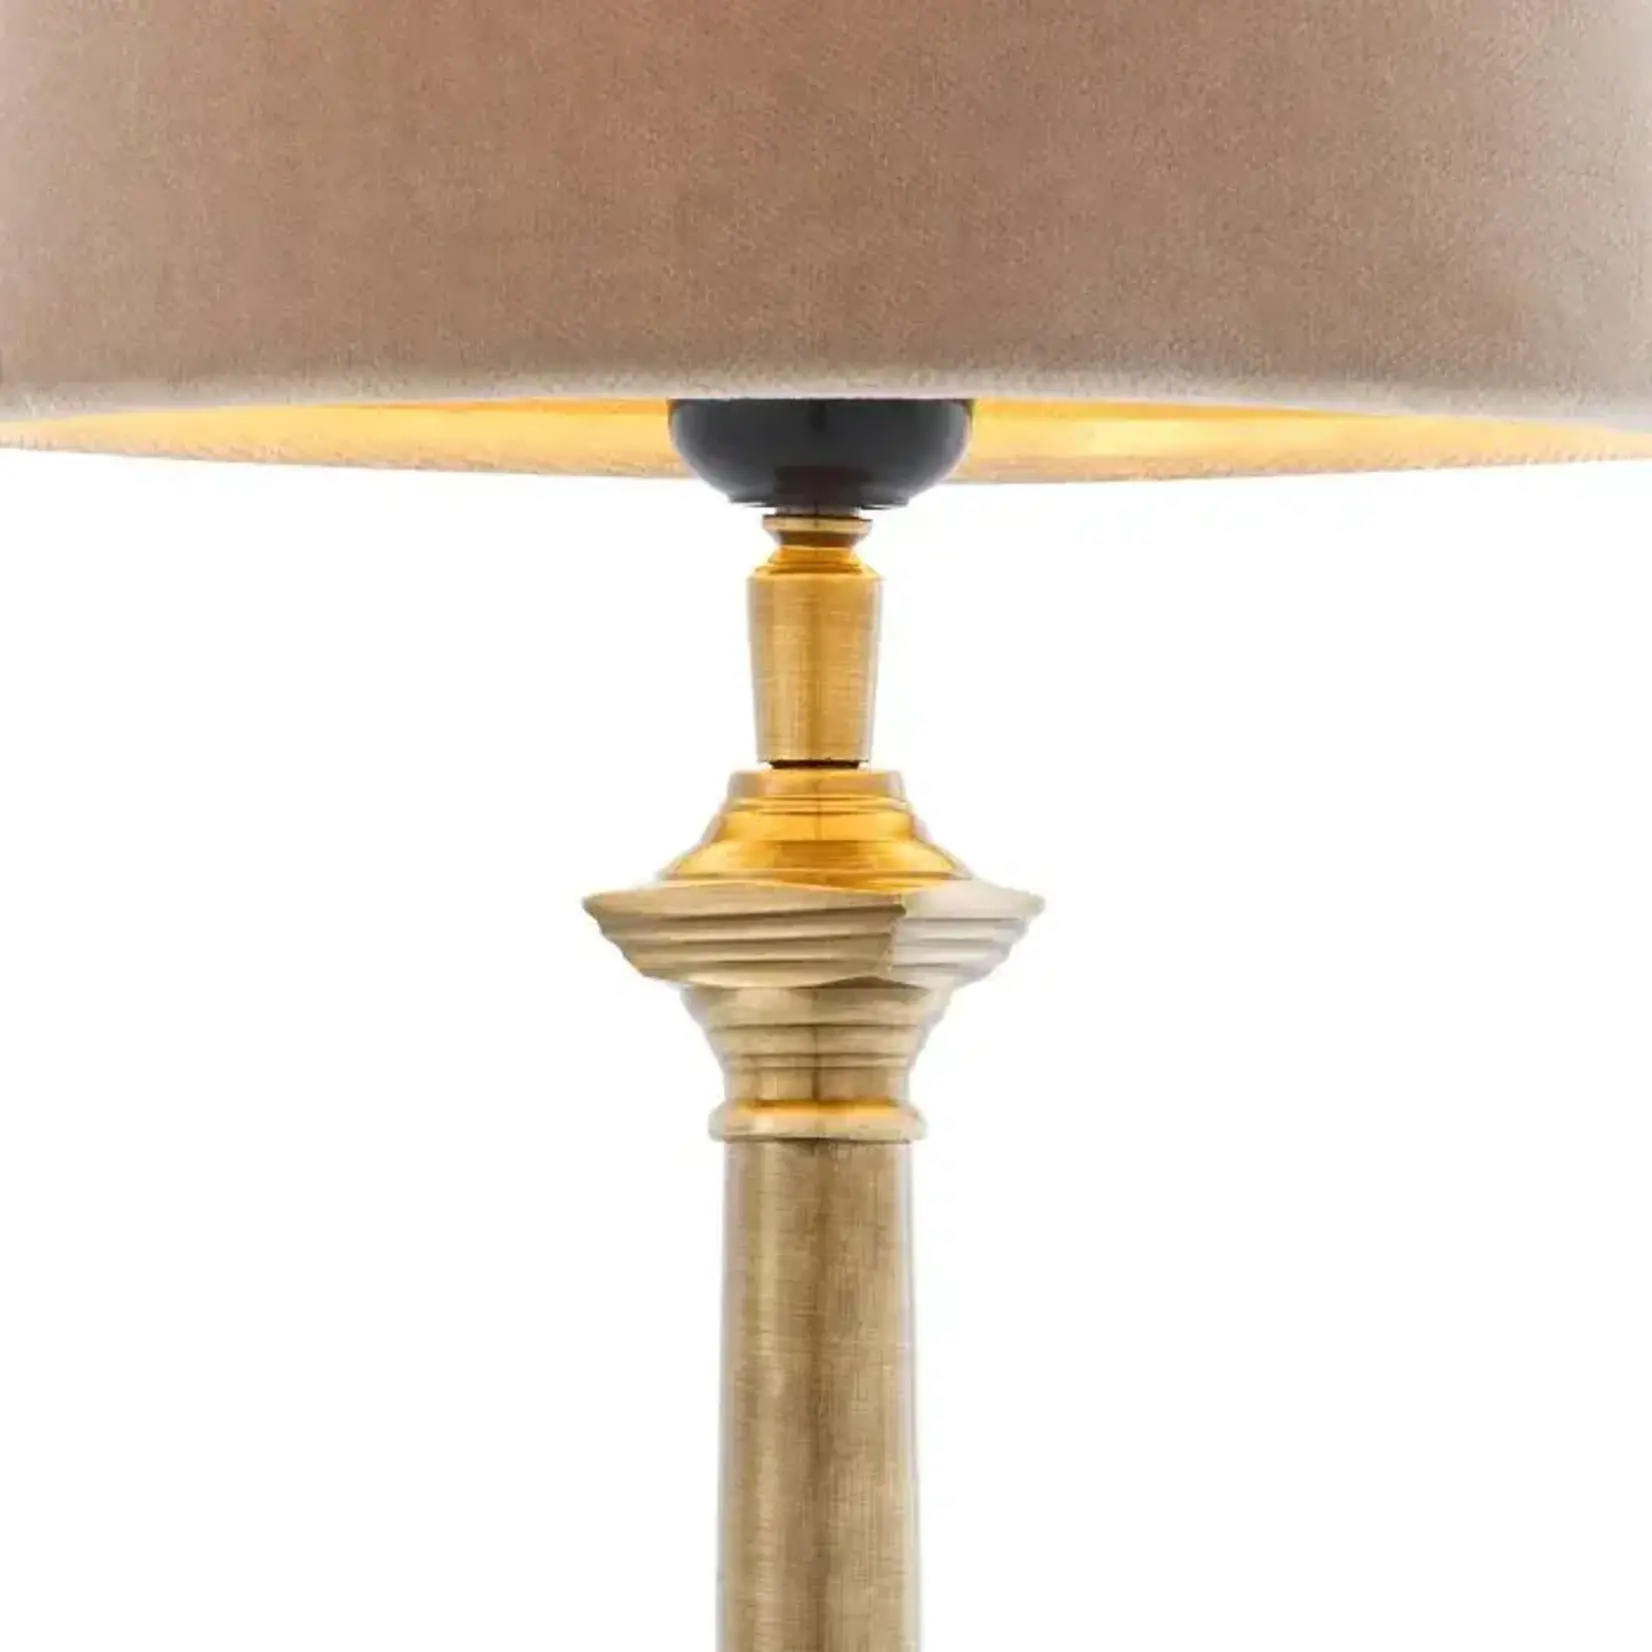 EICHHOLTZ TABLE LAMP COLOGNE S ANTIQUE BRASS FINISH